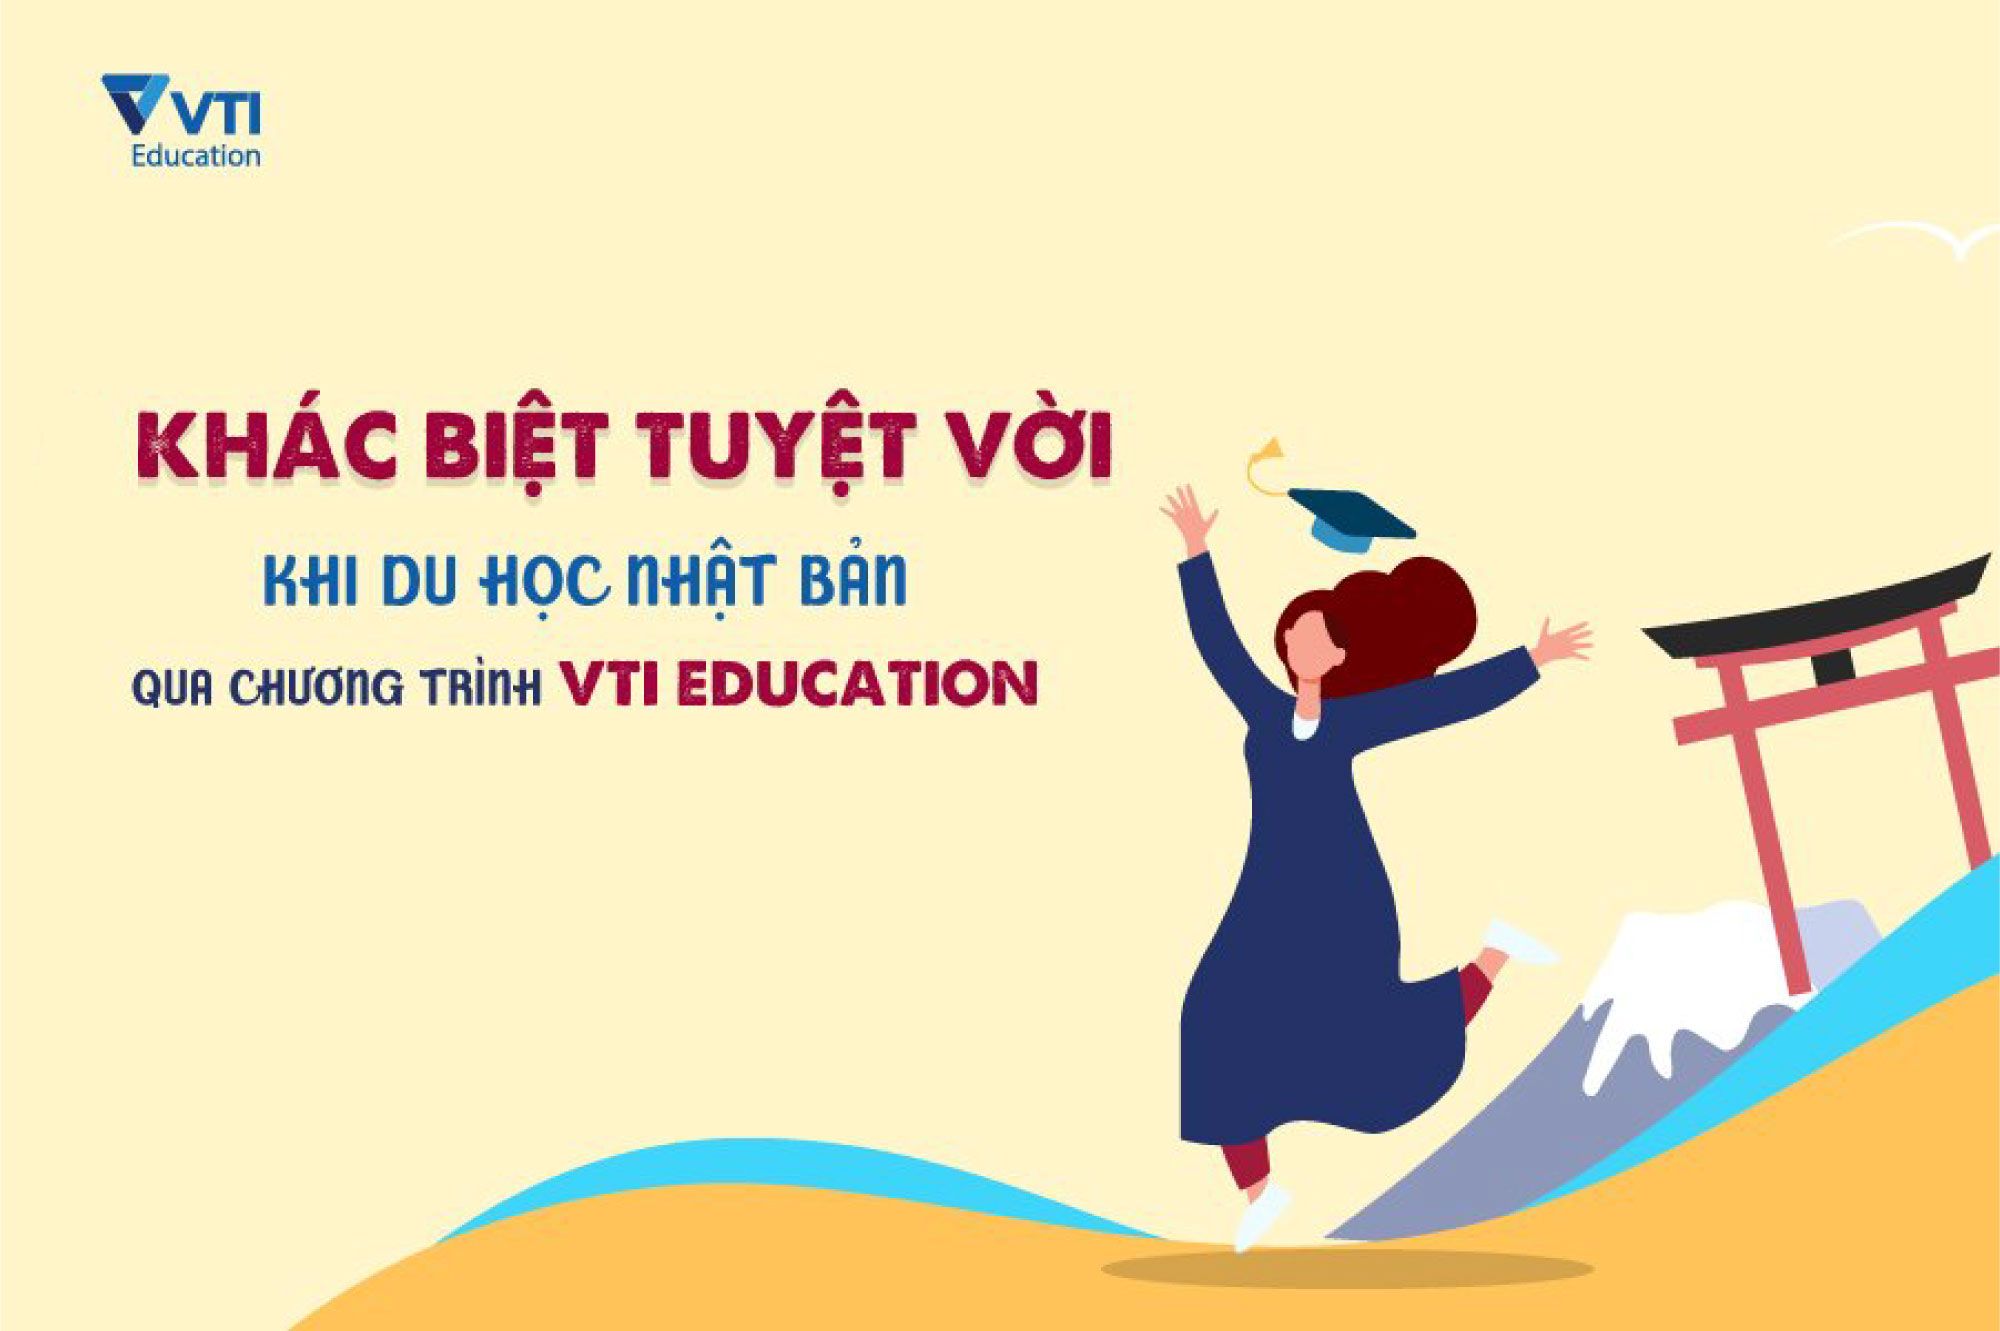 Du học Nhật Bản qua chương trình của VTI Education